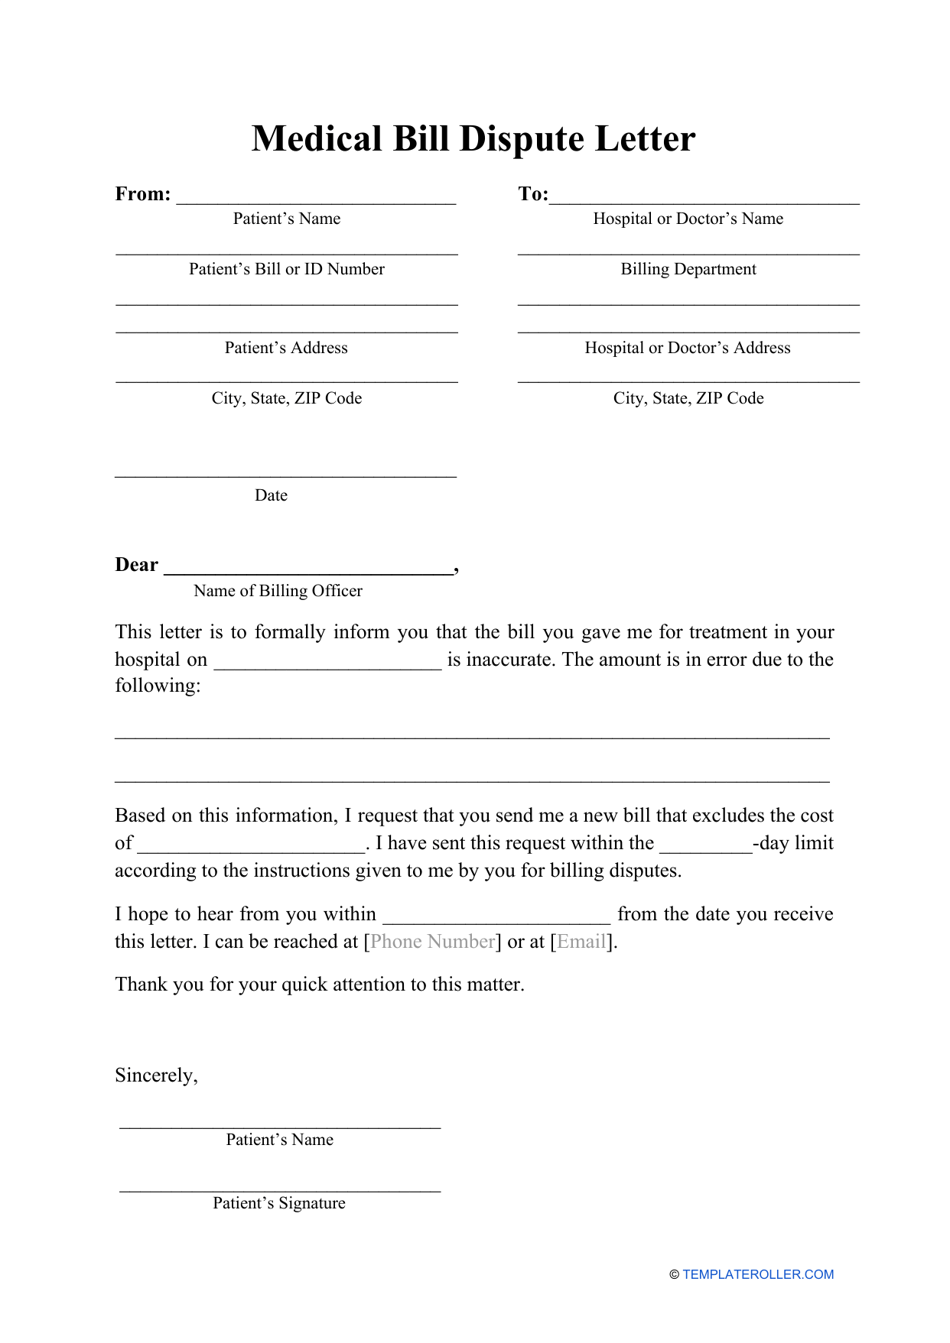 Medical Bill Dispute Letter Template Download Printable PDF Regarding Credit Report Dispute Letter Template